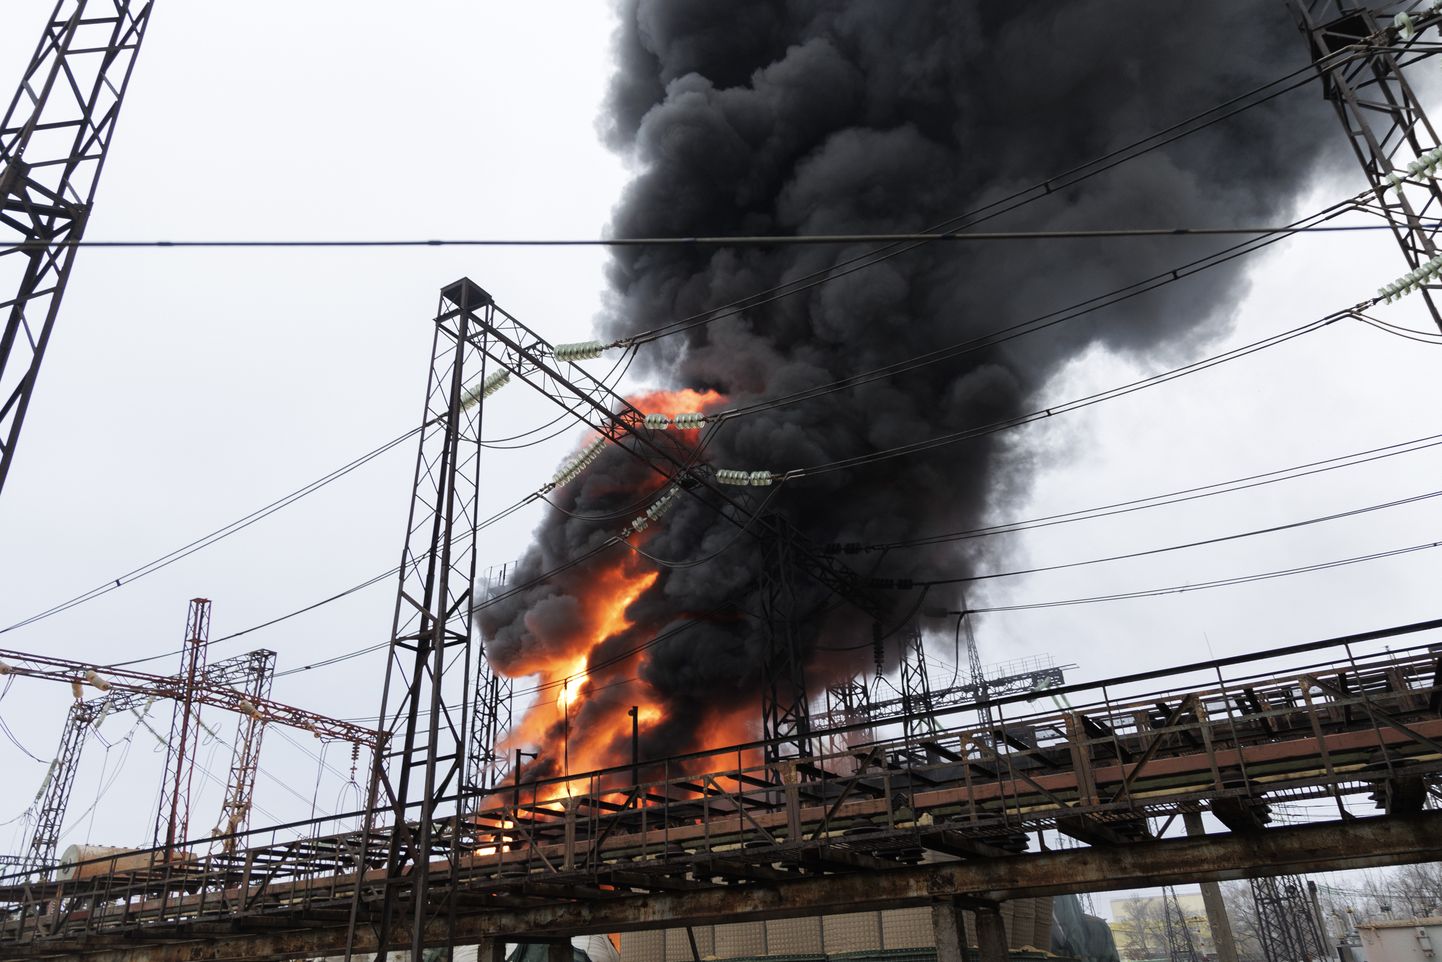 Vene rünnakust põhjustatud tulekahju ühes Harkivi energiarajatises. Foto on illustratiivne.